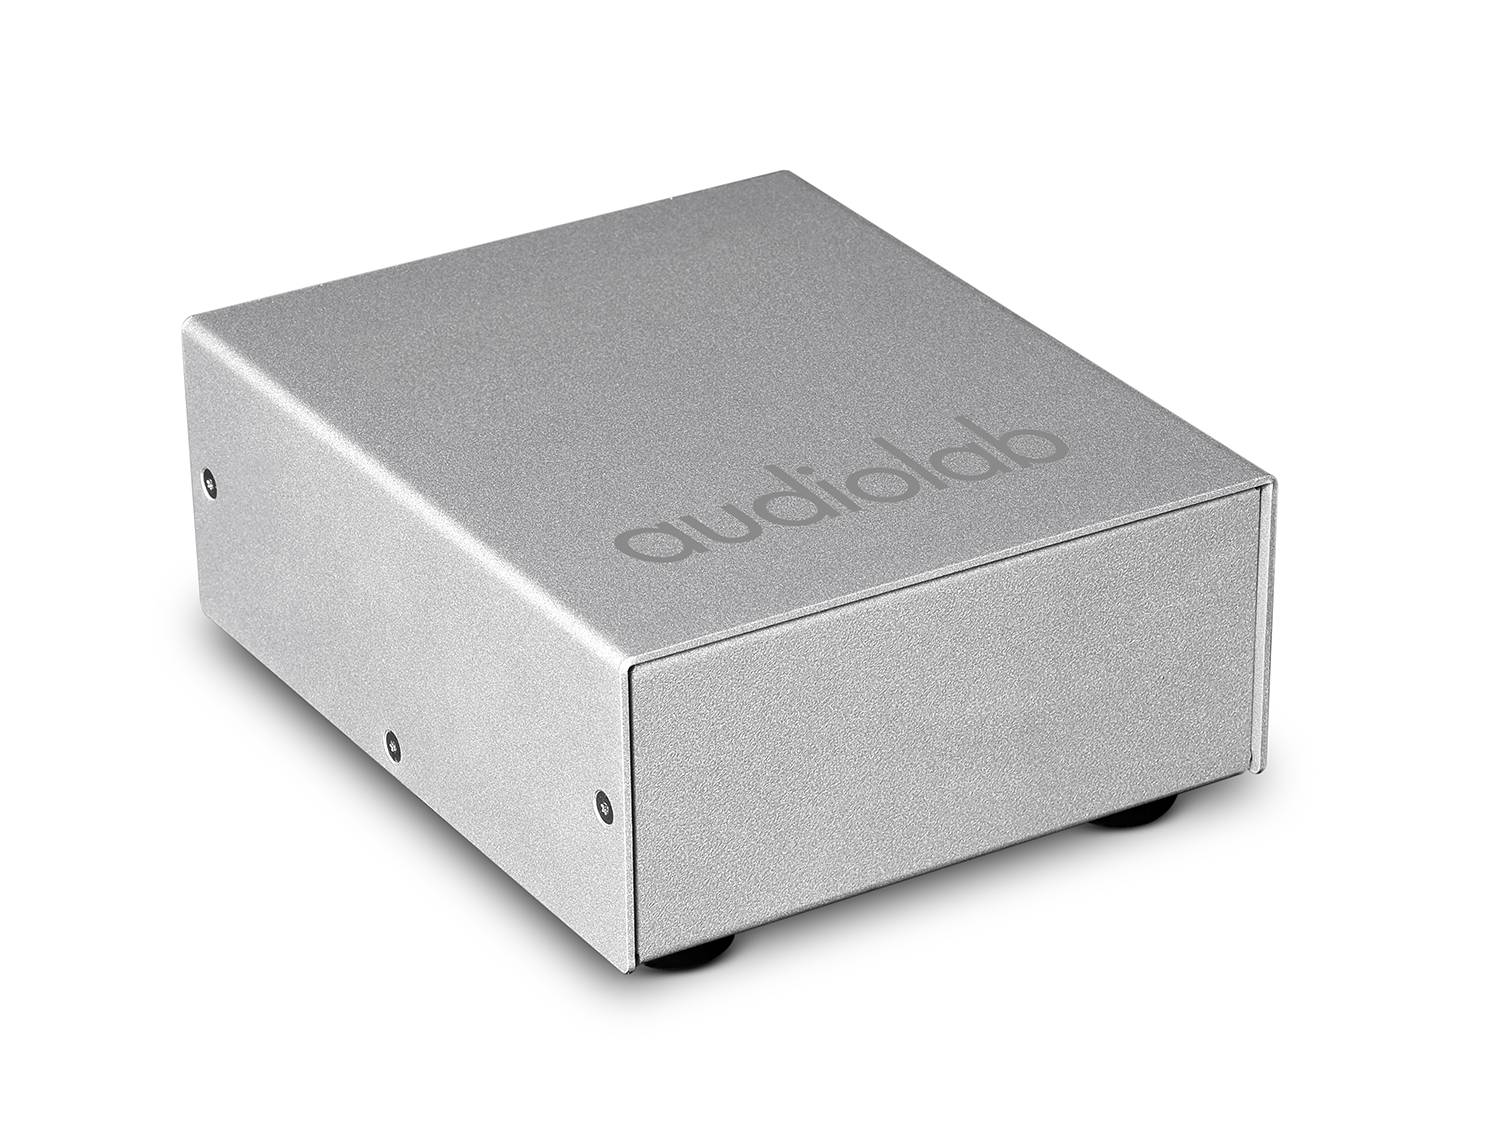 Audiolab-Audiolab DC BLOCK-PremiumHIFI